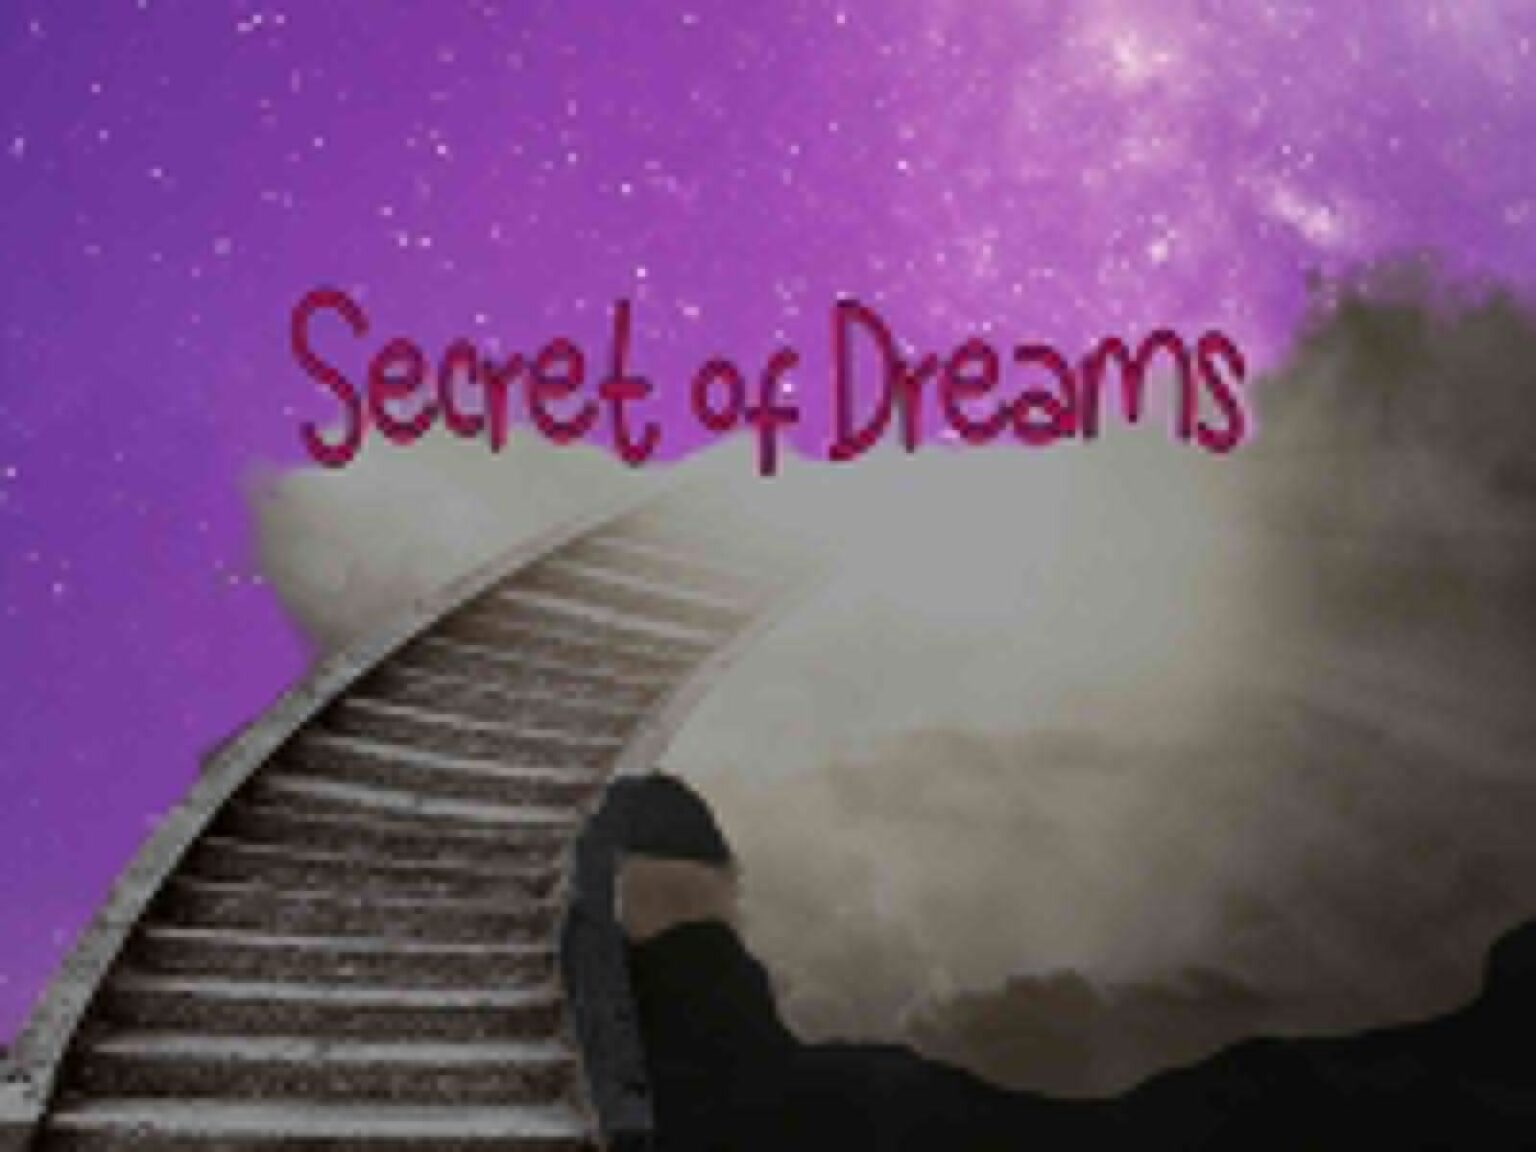 Secret of Dreams : क्या है सपने में स्वर्ग देखने का अर्थ, जानिये स्वप्नशास्त्र के अनुसार 'स्वर्गिक स्वप्न' के संकेत